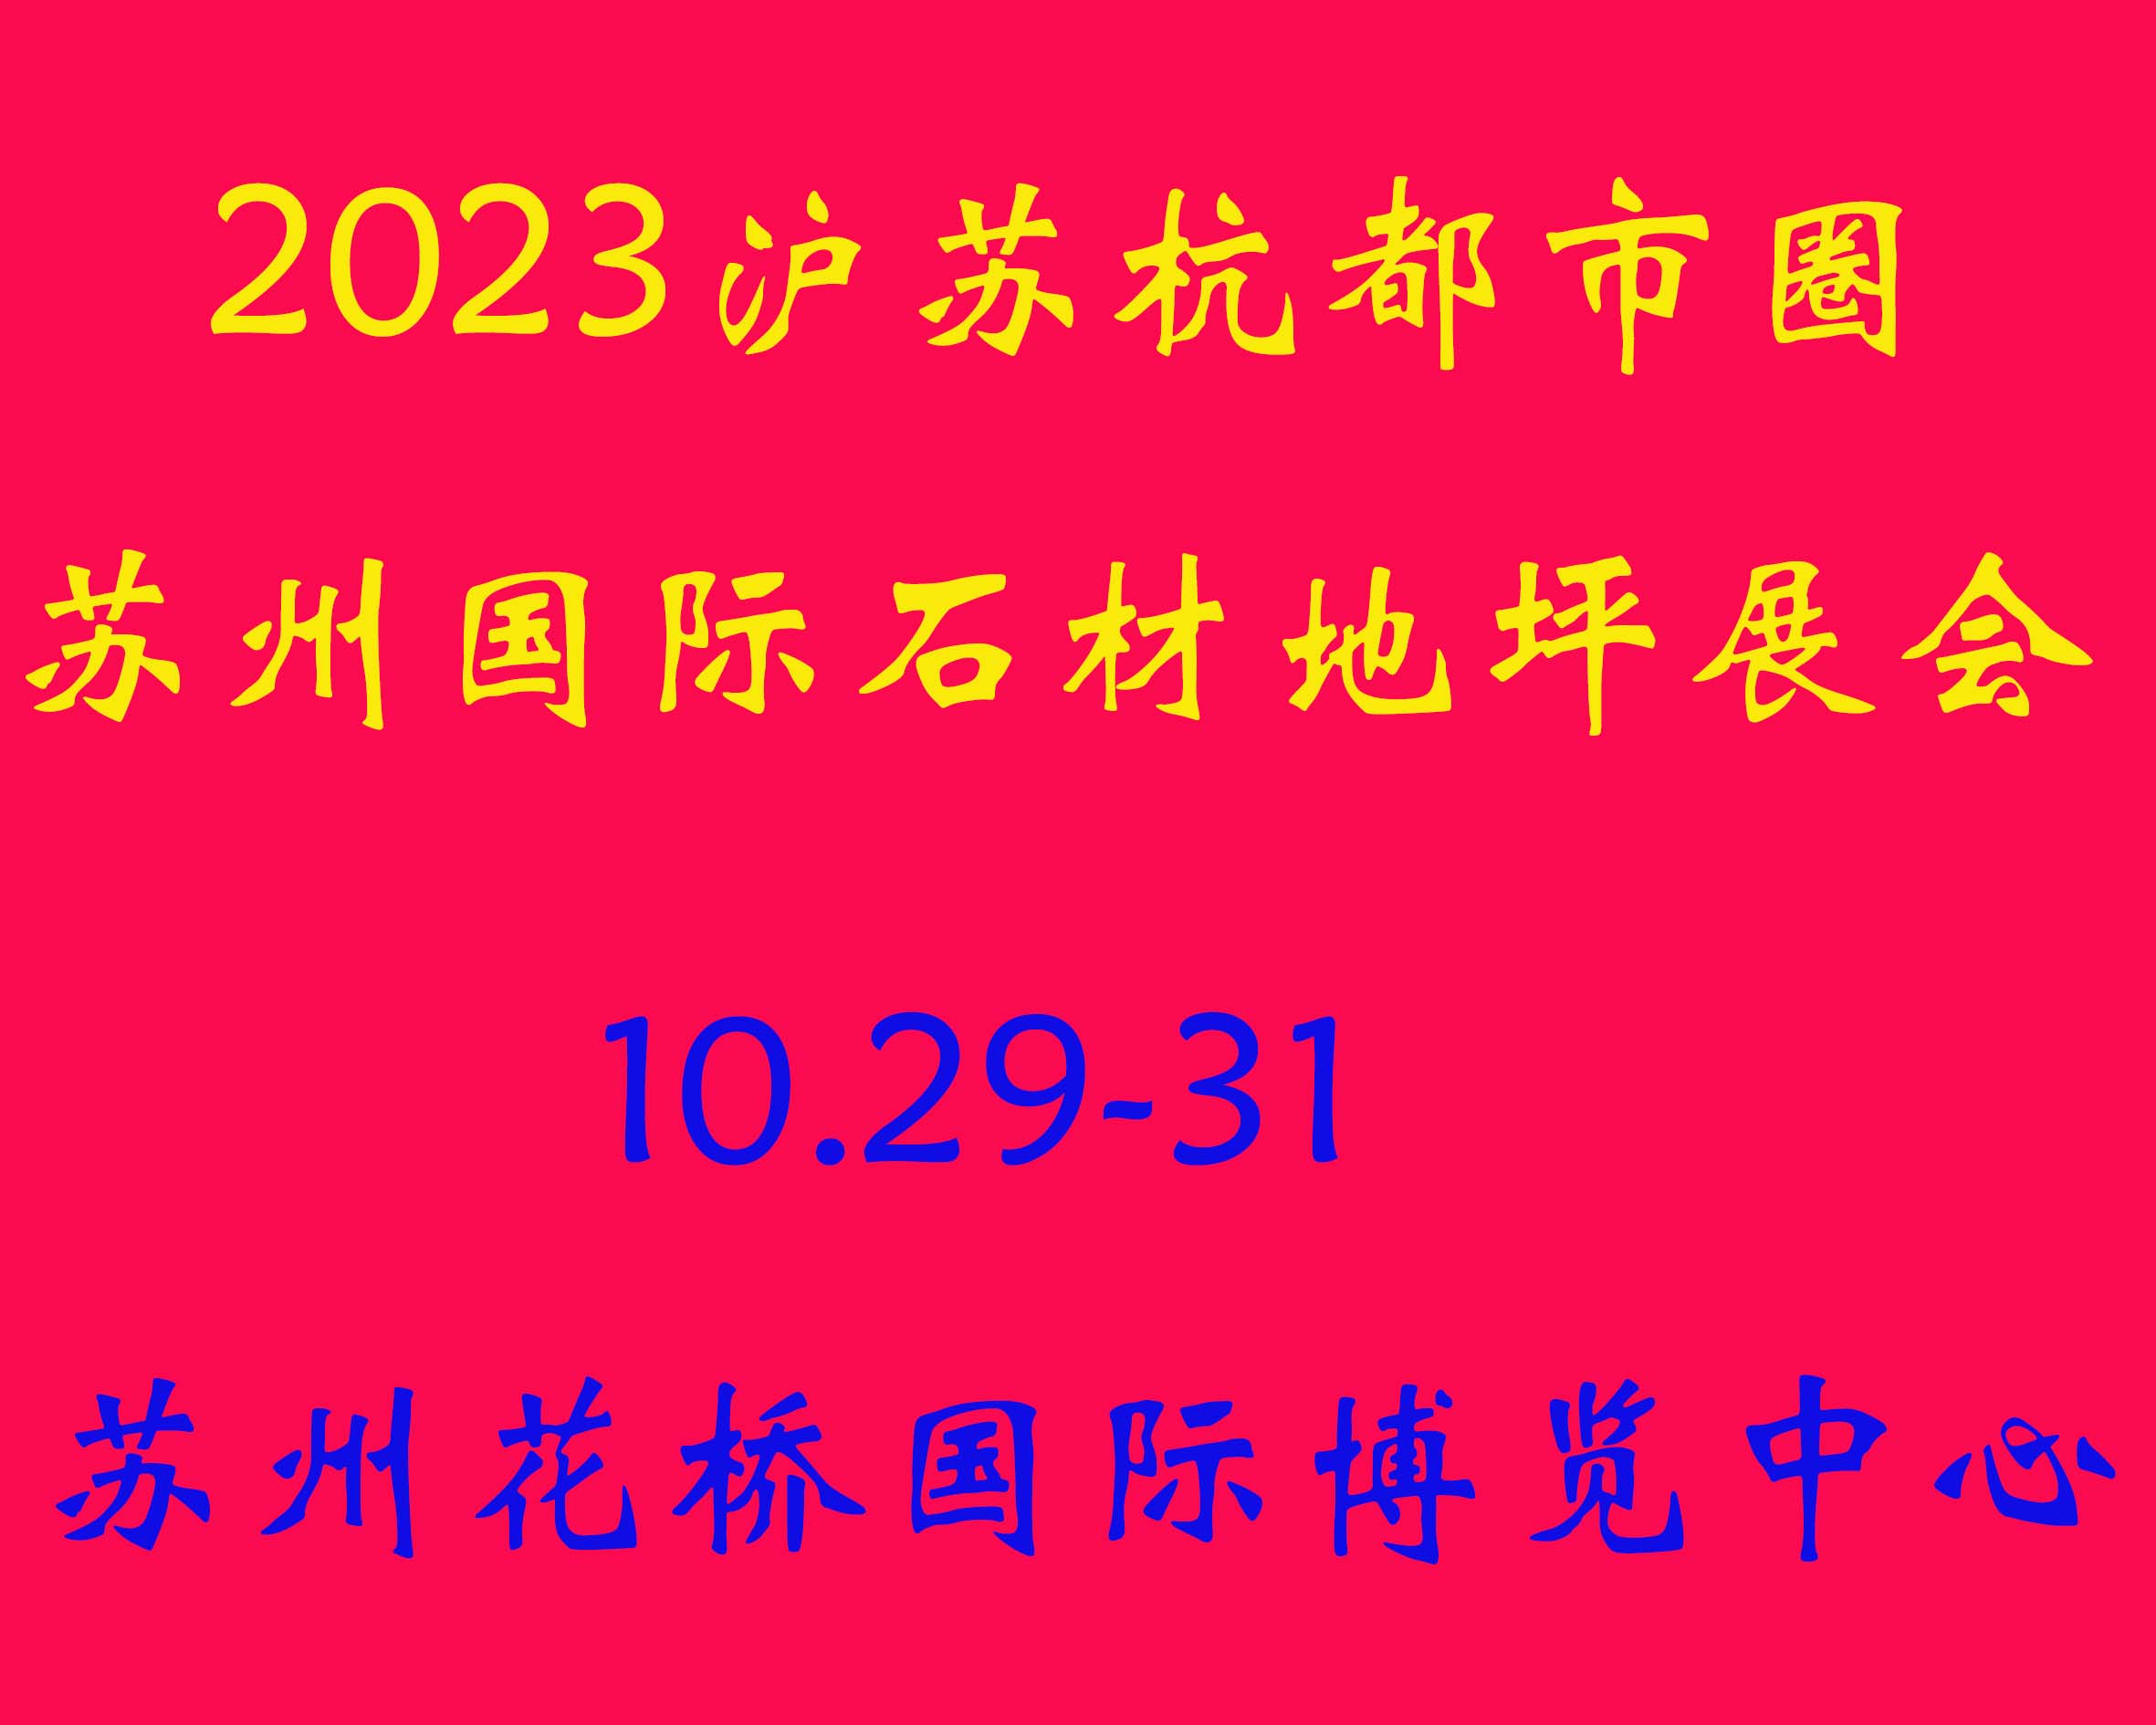 展会标题图片：2023（沪苏杭都市圈）国际石材展览会